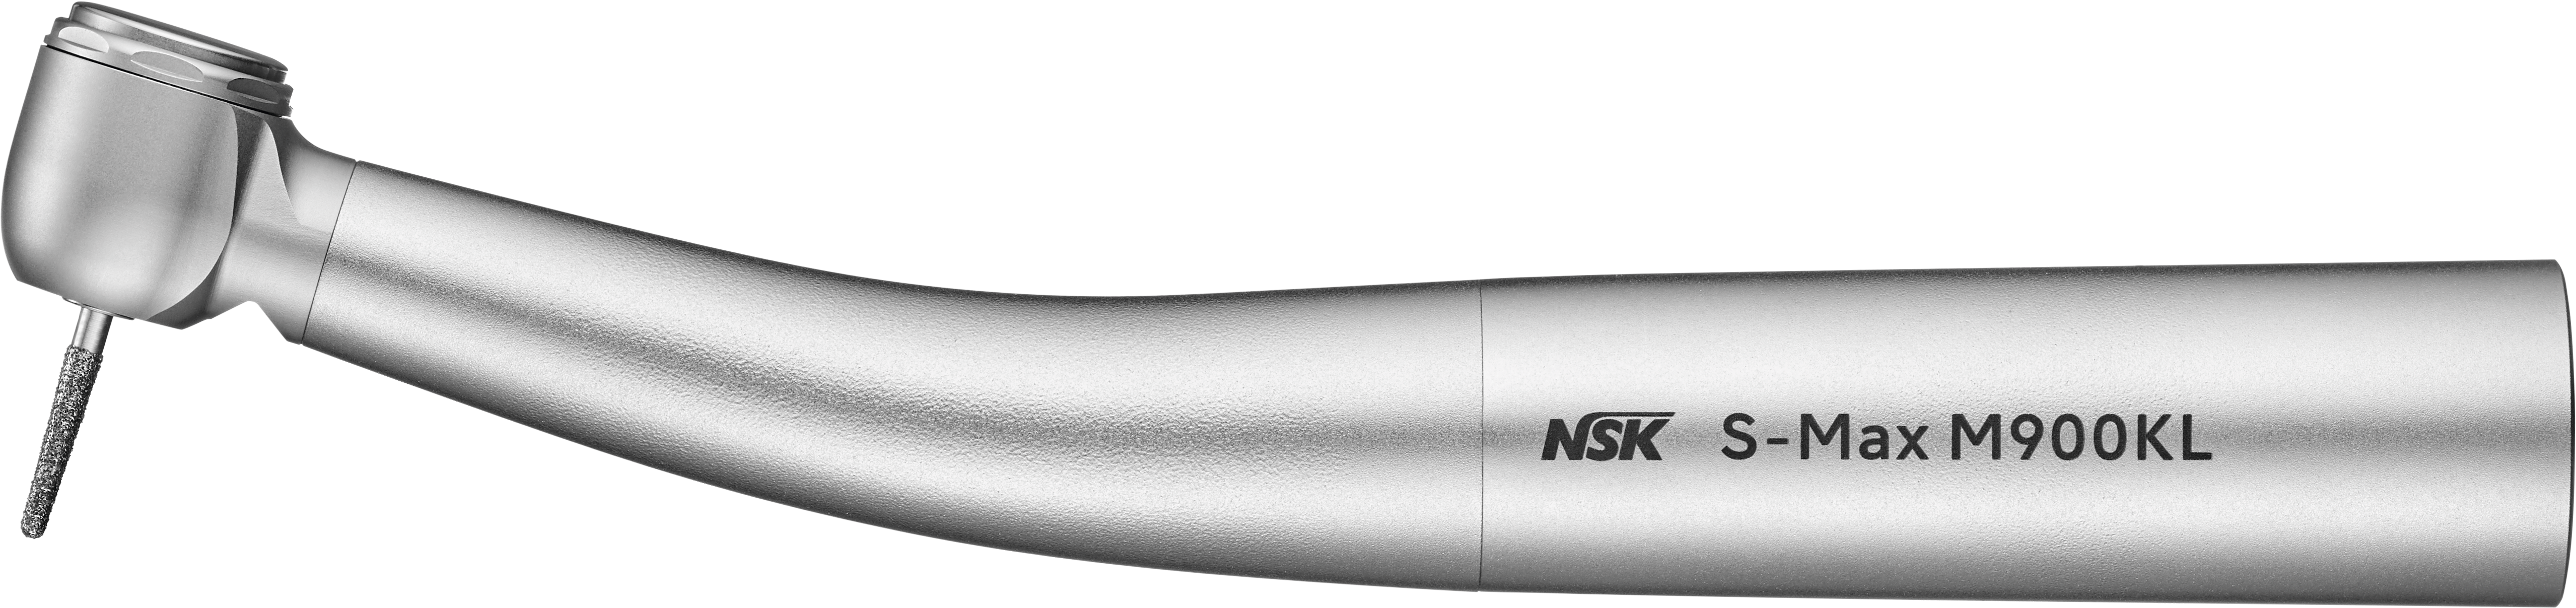  - Turbina NSK S-Max M900KL -Att.Kavo